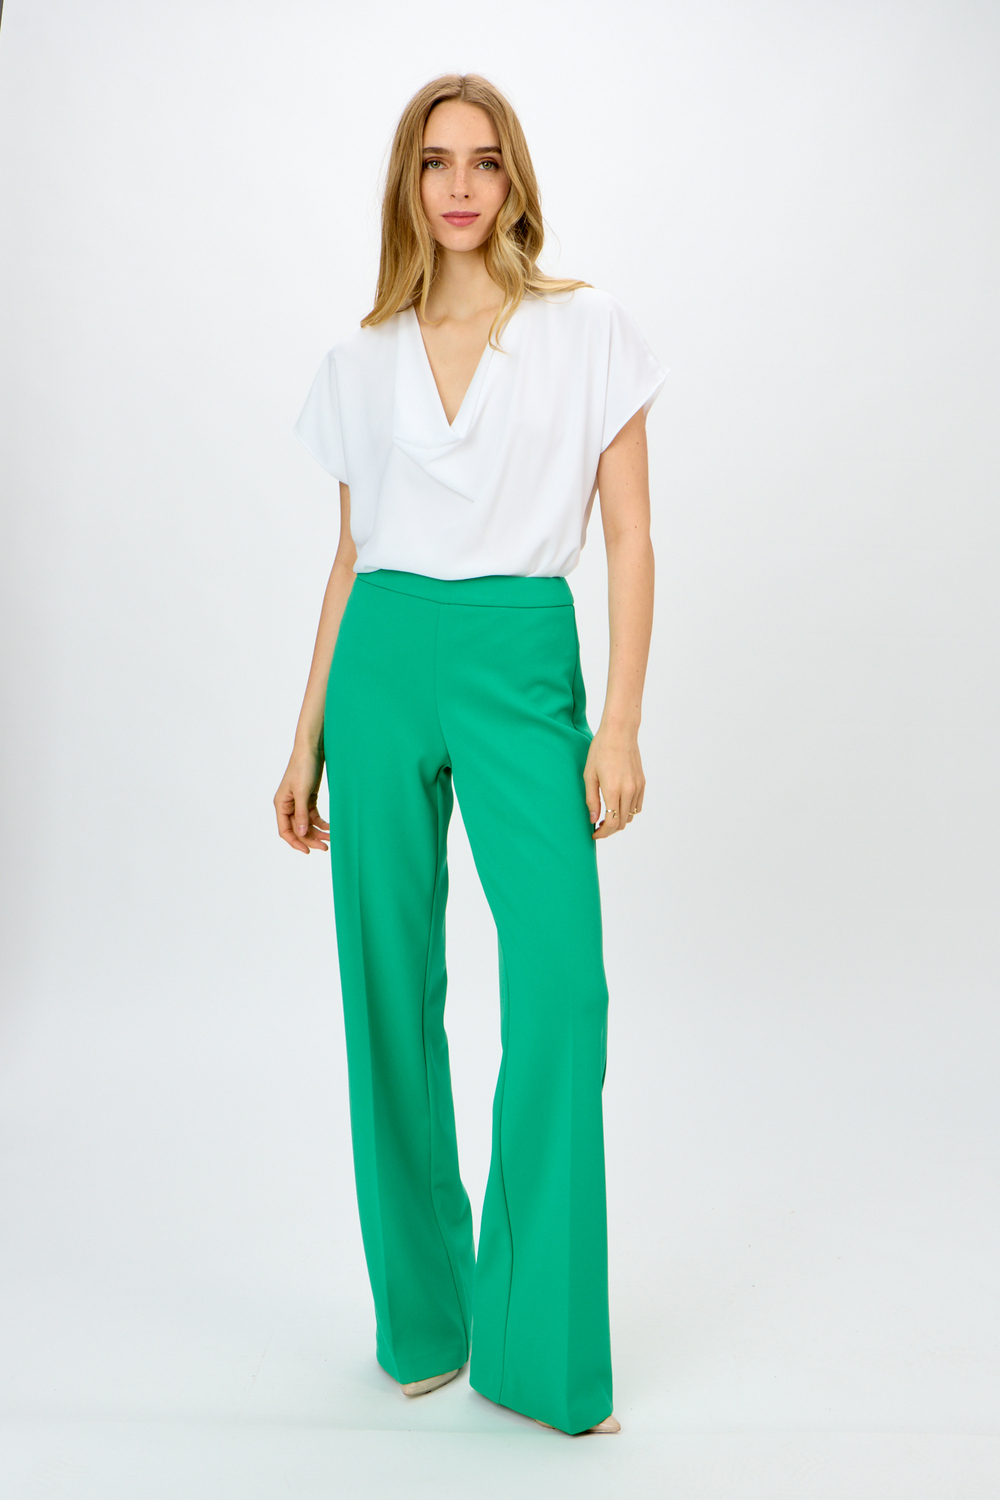 Pantalon large, plis marqués modèle 233787S24. Noble Green